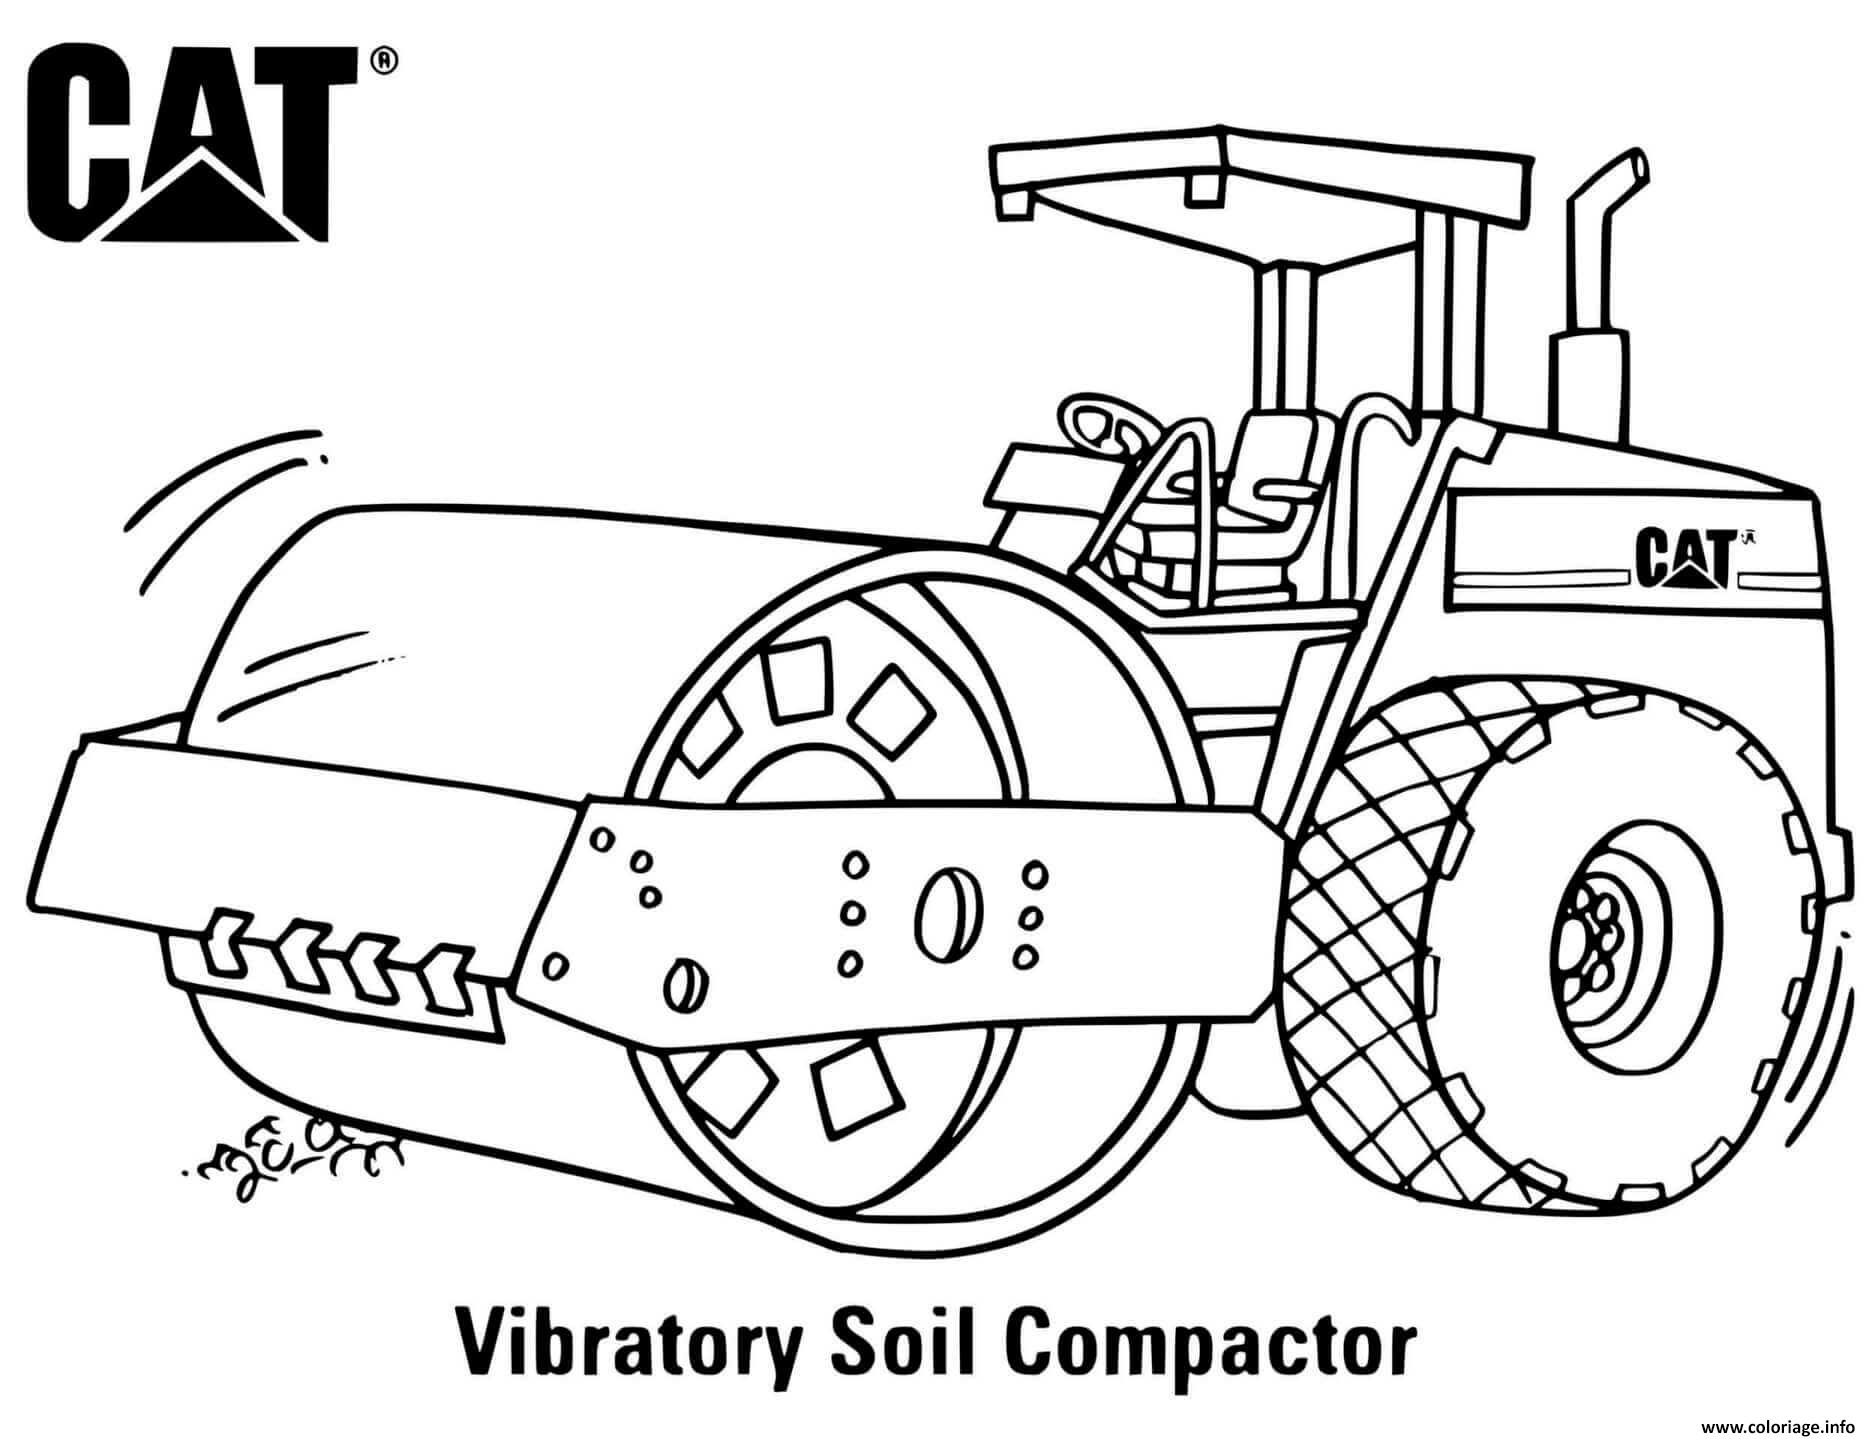 Dessin vibratory soil compactor engin de chantier Coloriage Gratuit à Imprimer